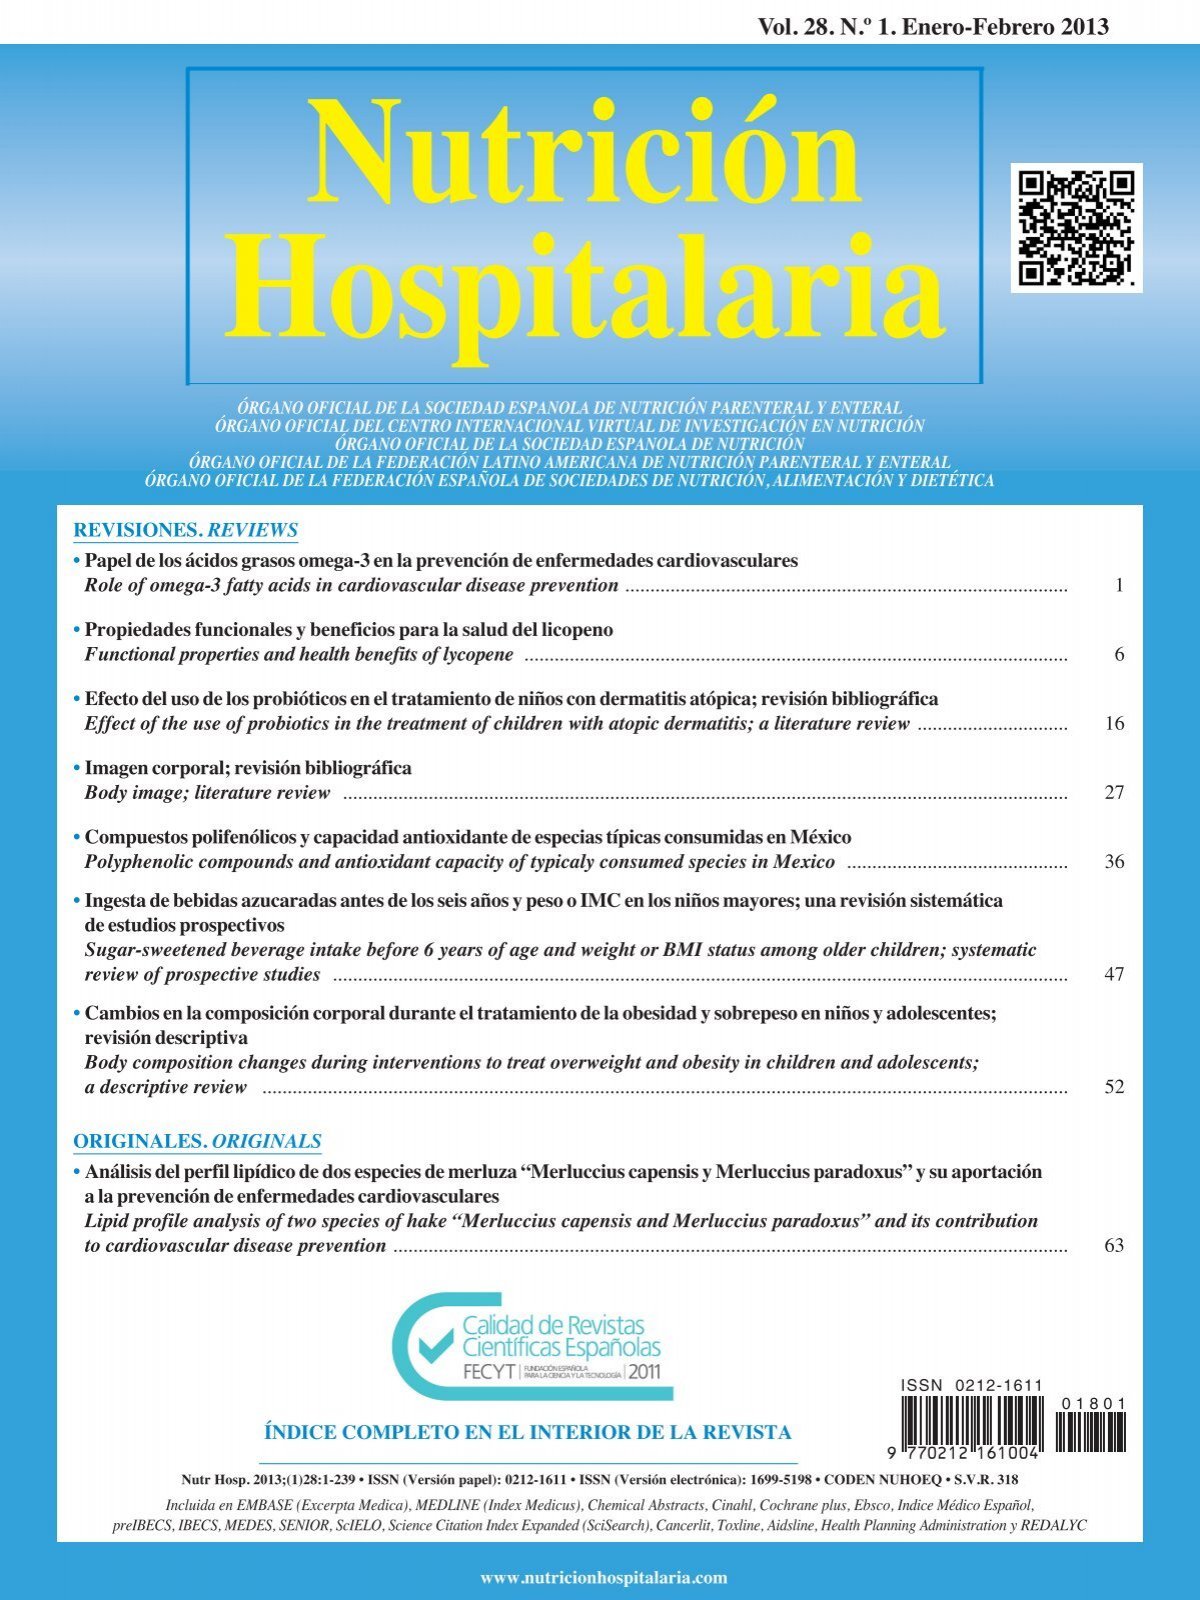 Descarga del número completo en PDF - Nutrición Hospitalaria